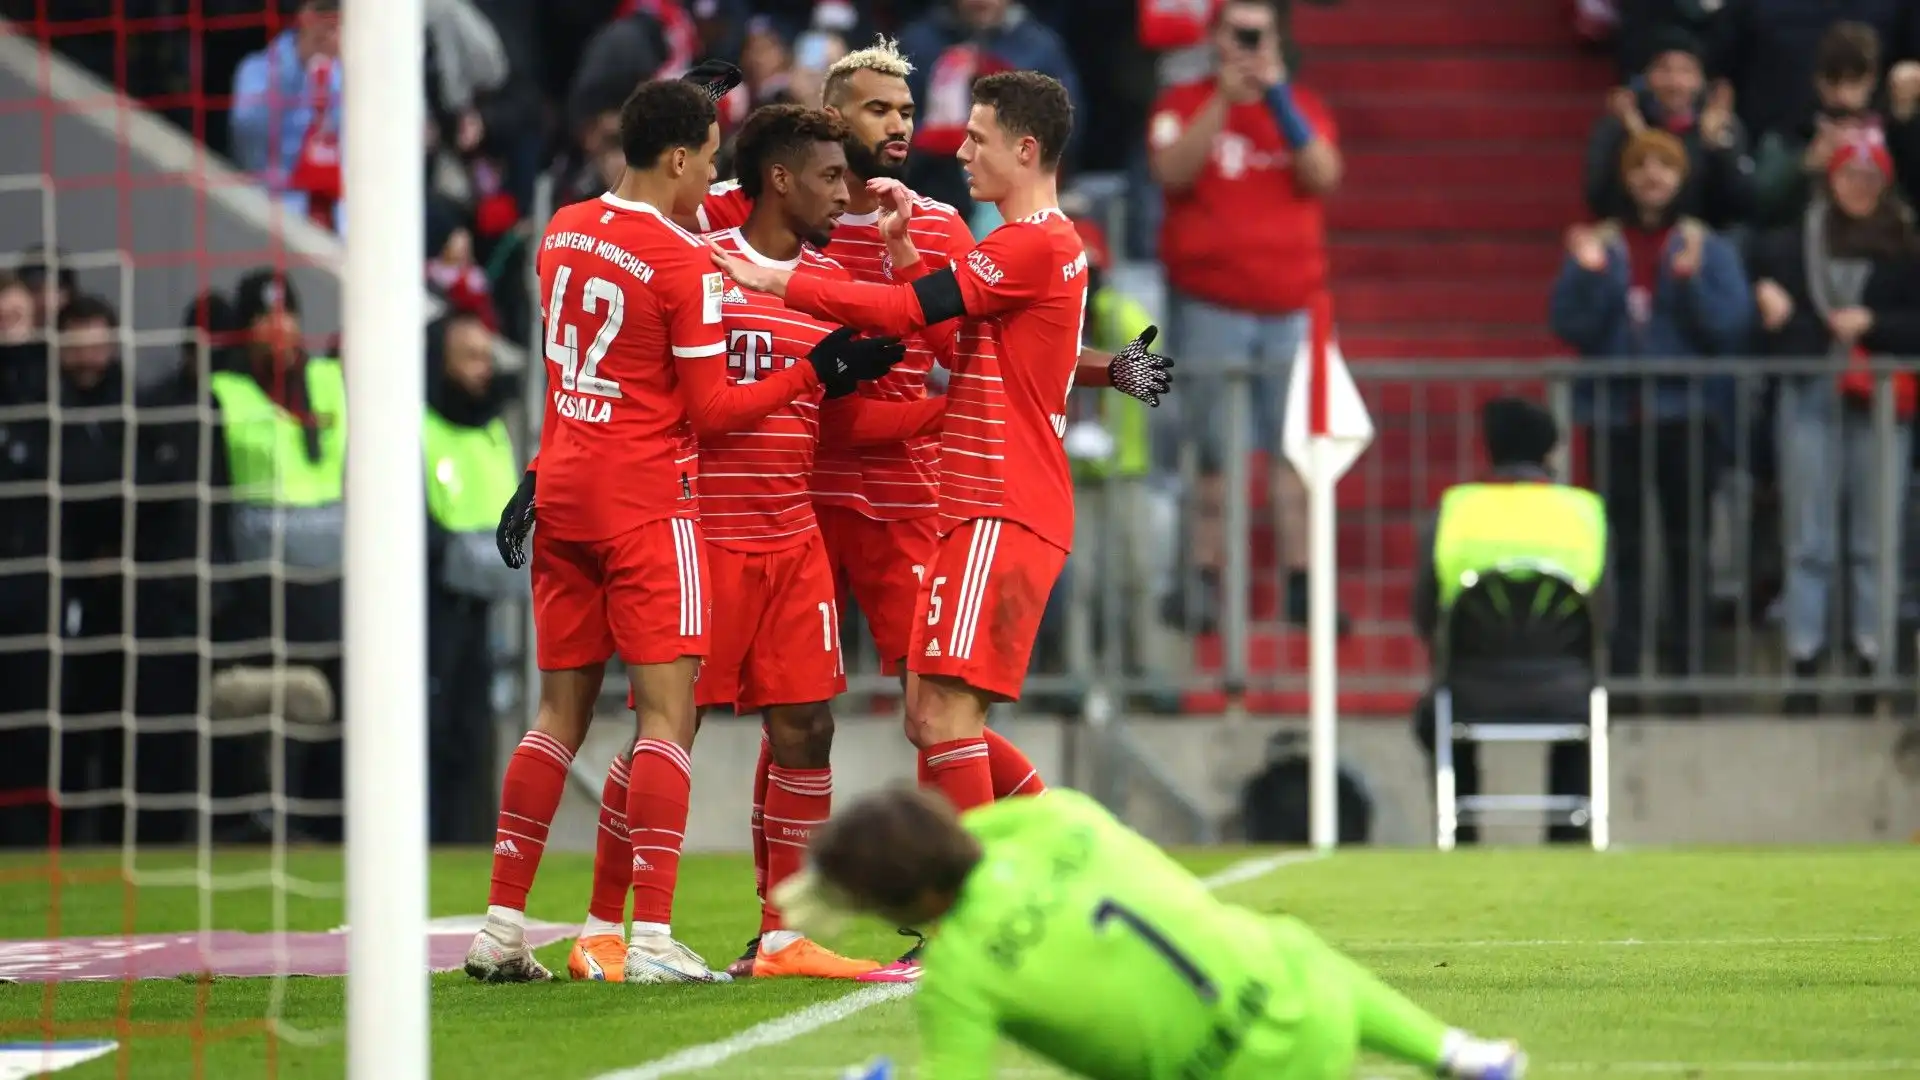 E' la terza vittoria consecutiva per il Bayern Monaco